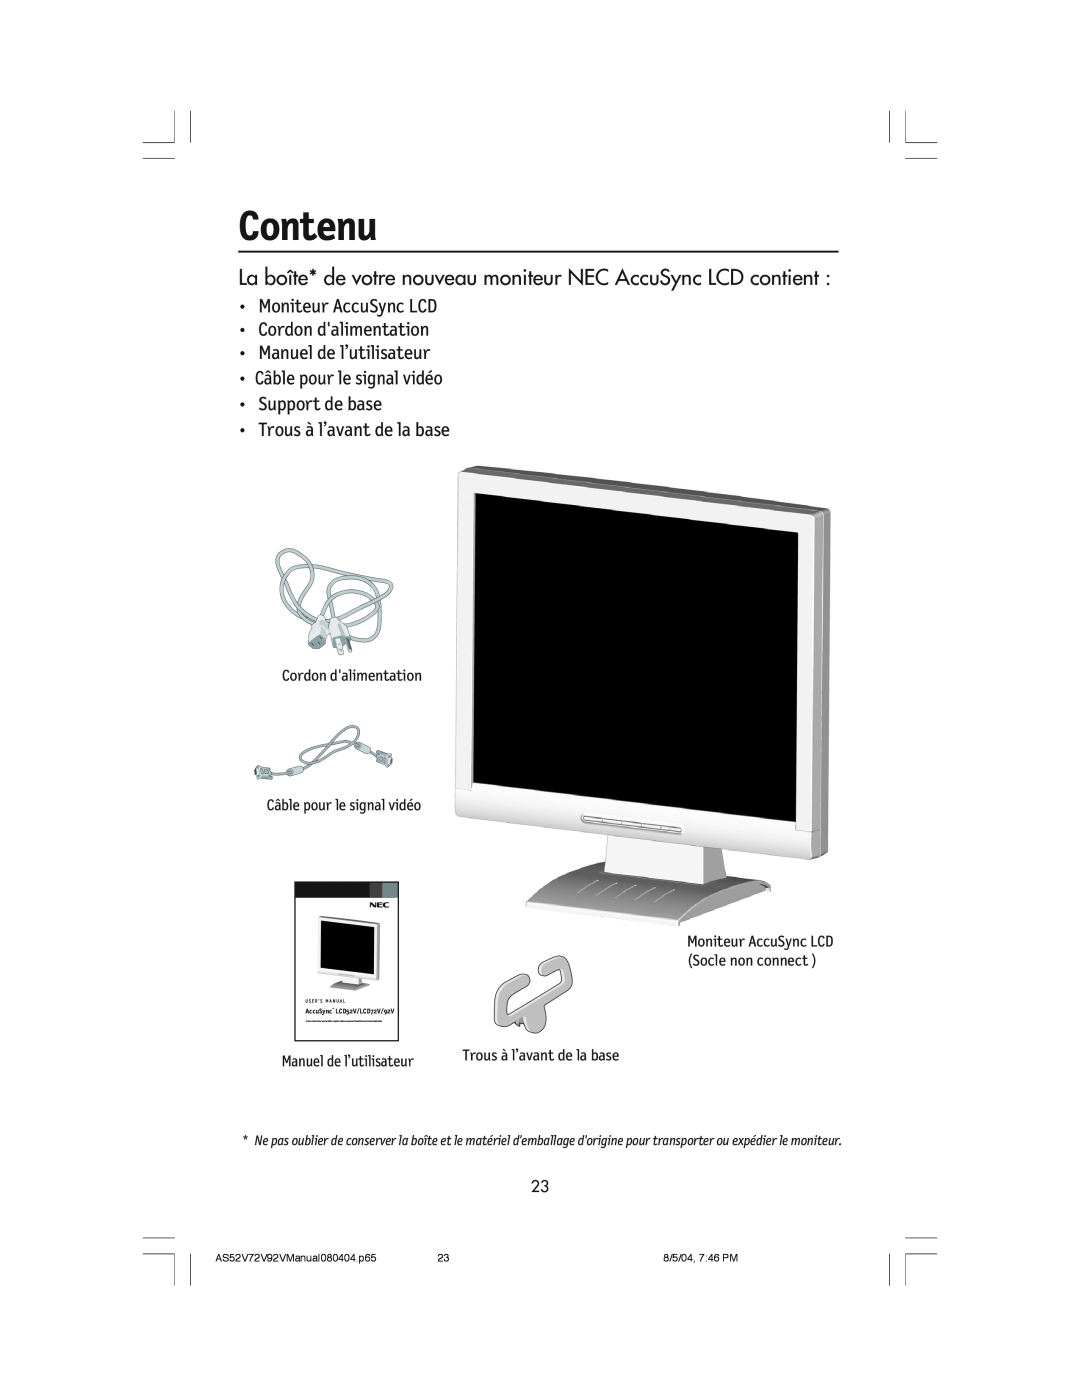 NEC LCD52V Contenu, La bo”te* de votre nouveau moniteur NEC AccuSync LCD contient, Manuel de l’utilisateur, 8/5/04, 746 PM 